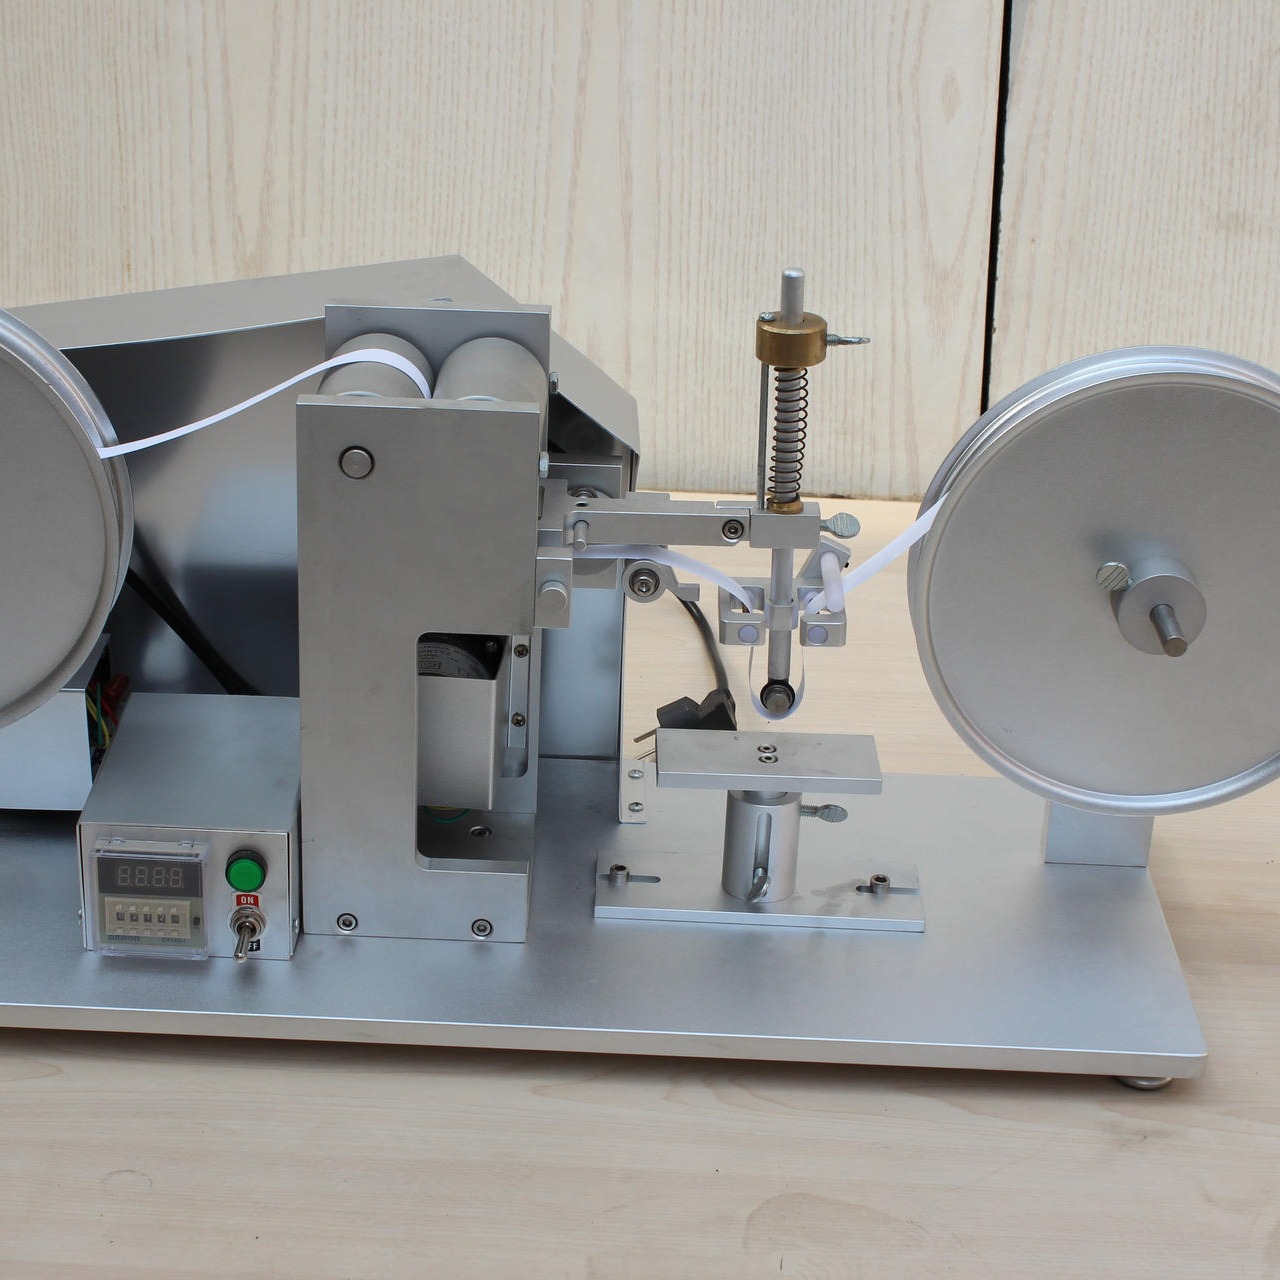 海莱斯HLS-9006 纸带耐磨试验机 用于各种表面涂装(电镀、烤漆、丝印等）试品之耐磨擦试验